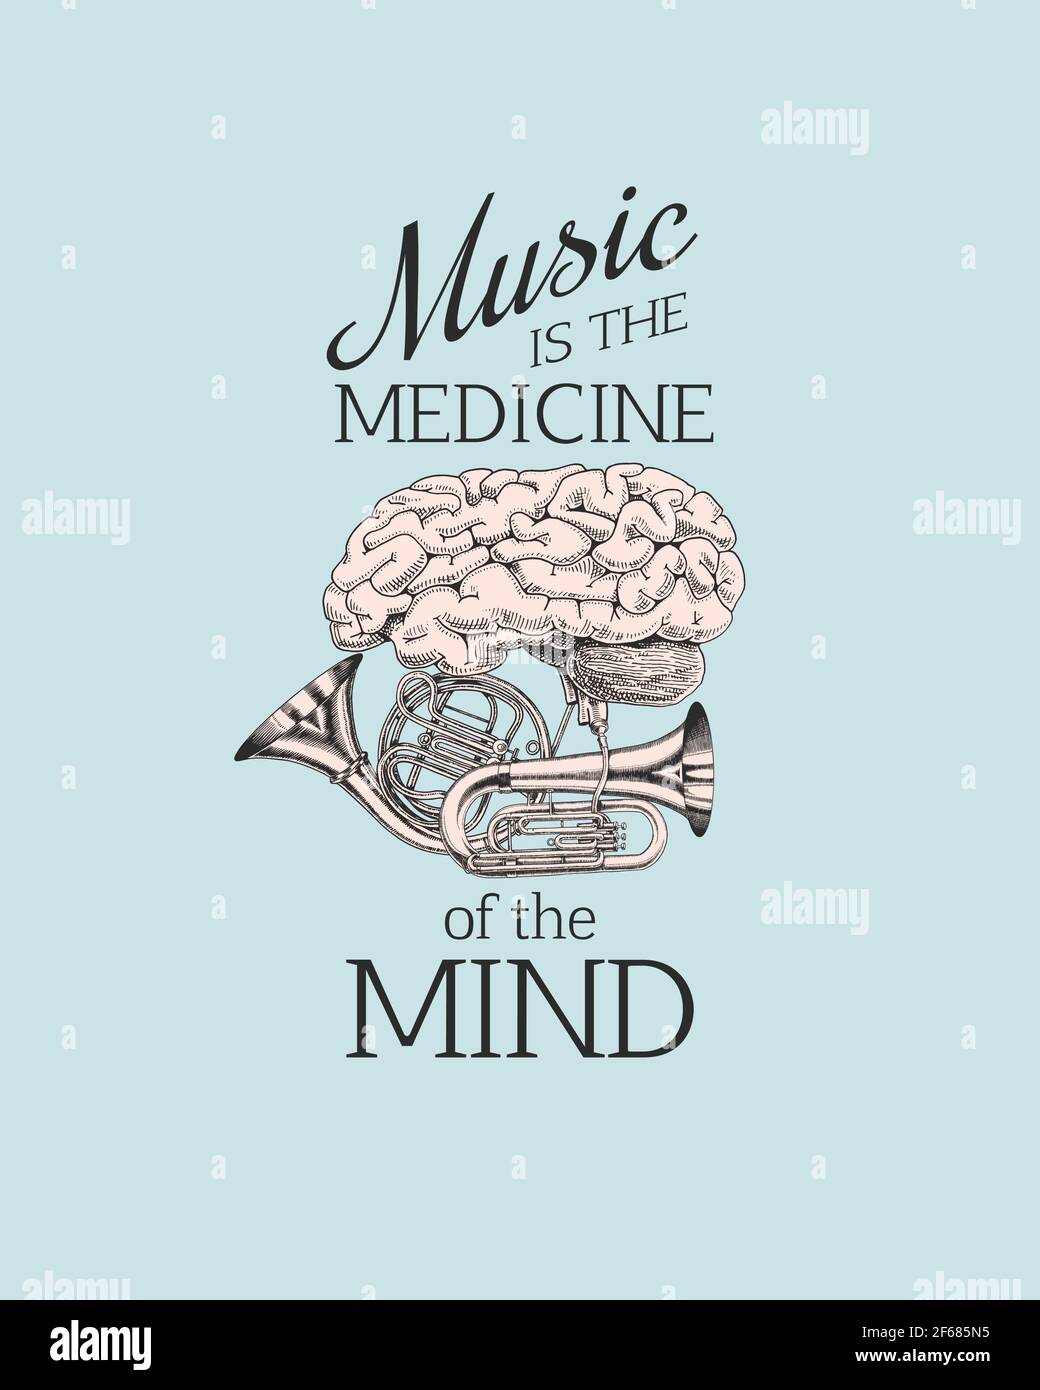 Brain et Jazz Tuba ou trompette dans un style vintage. La musique est la  médecine de l'esprit. Dessin de grunge dessiné à la main pour tatouage.  Devis pour t-shirt. Vecteur Image Vectorielle